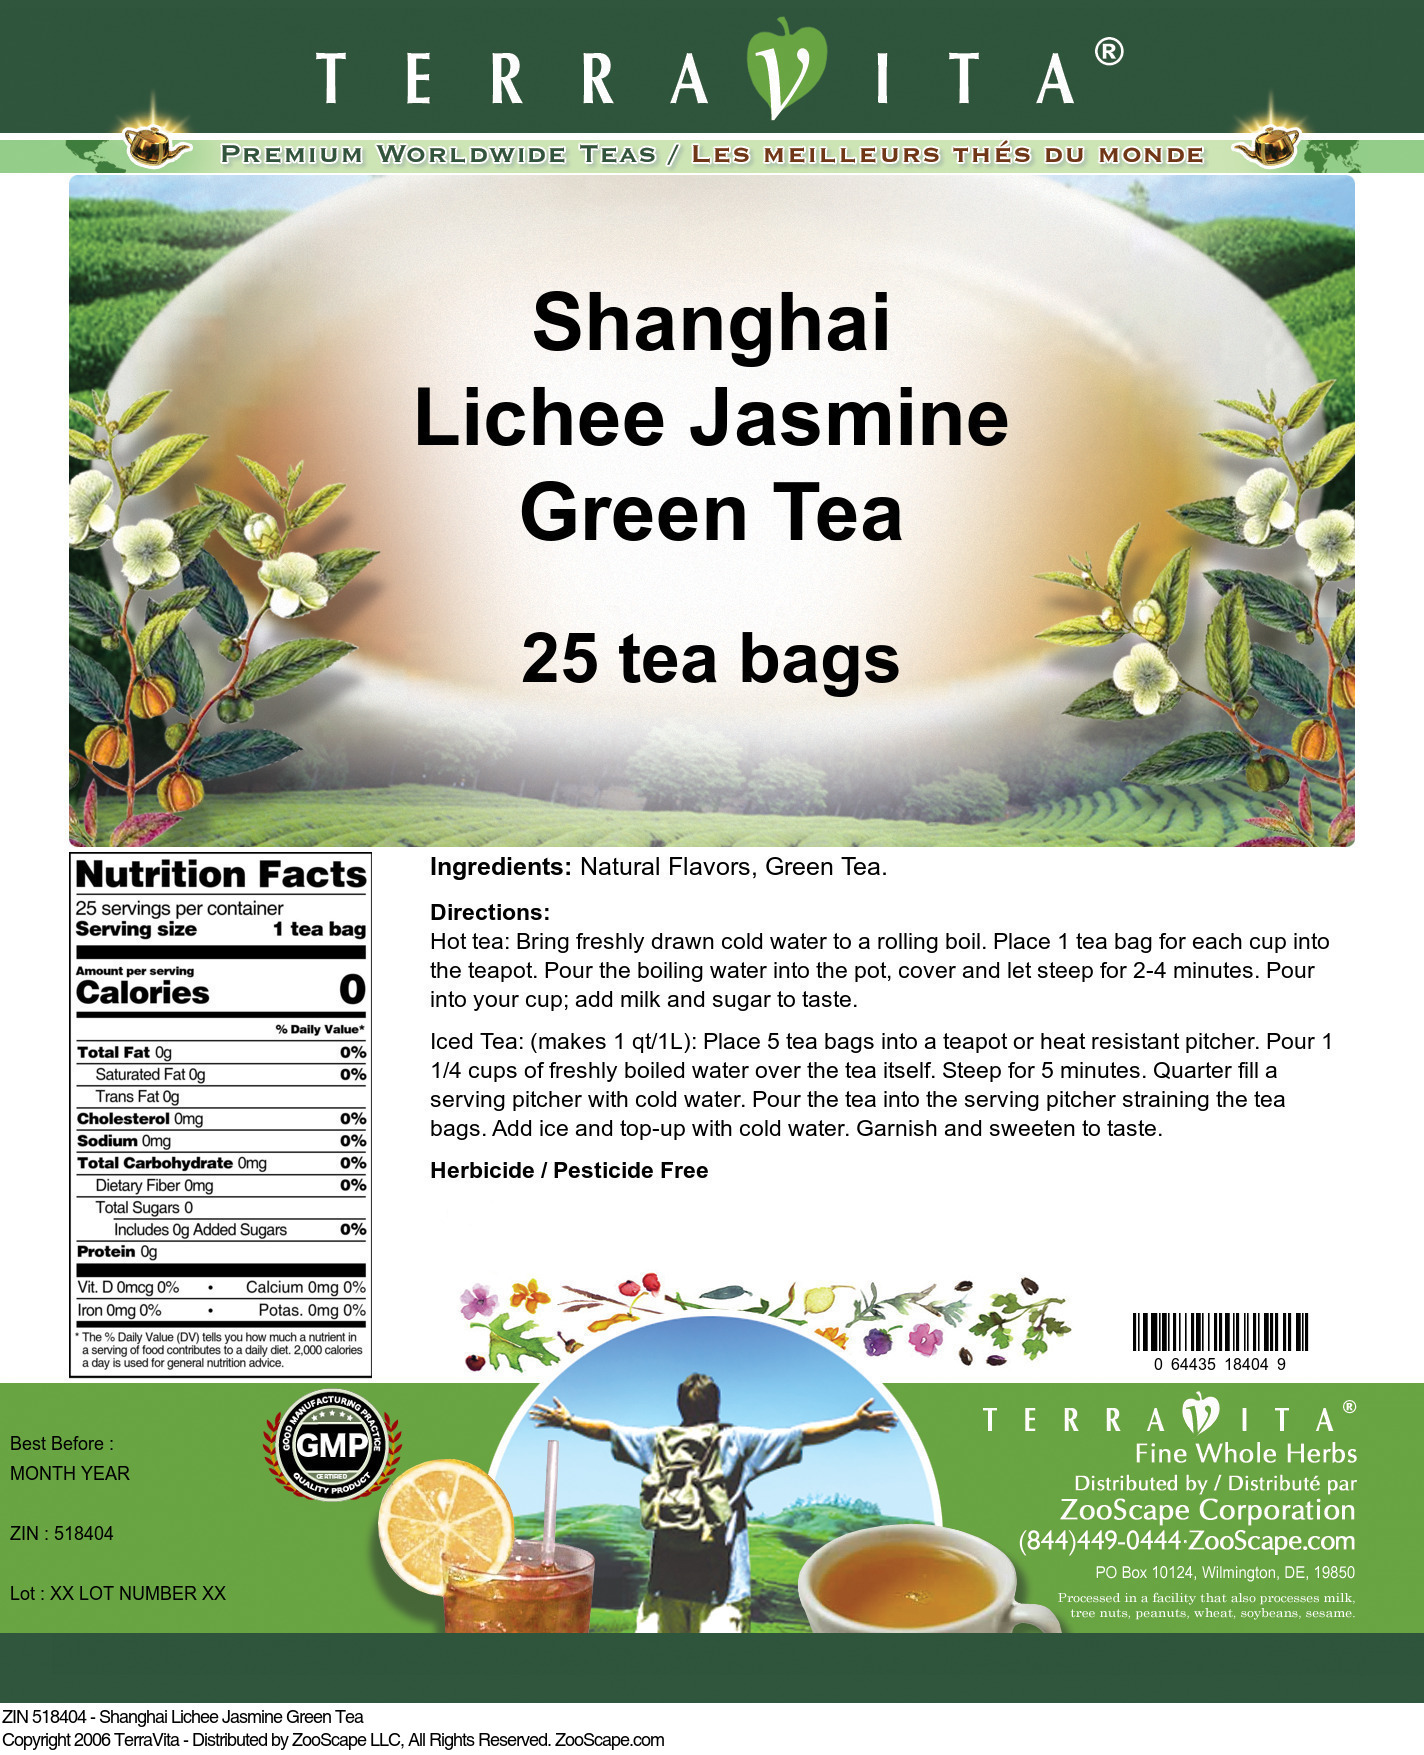 Shanghai Lichee Jasmine Green Tea - Label